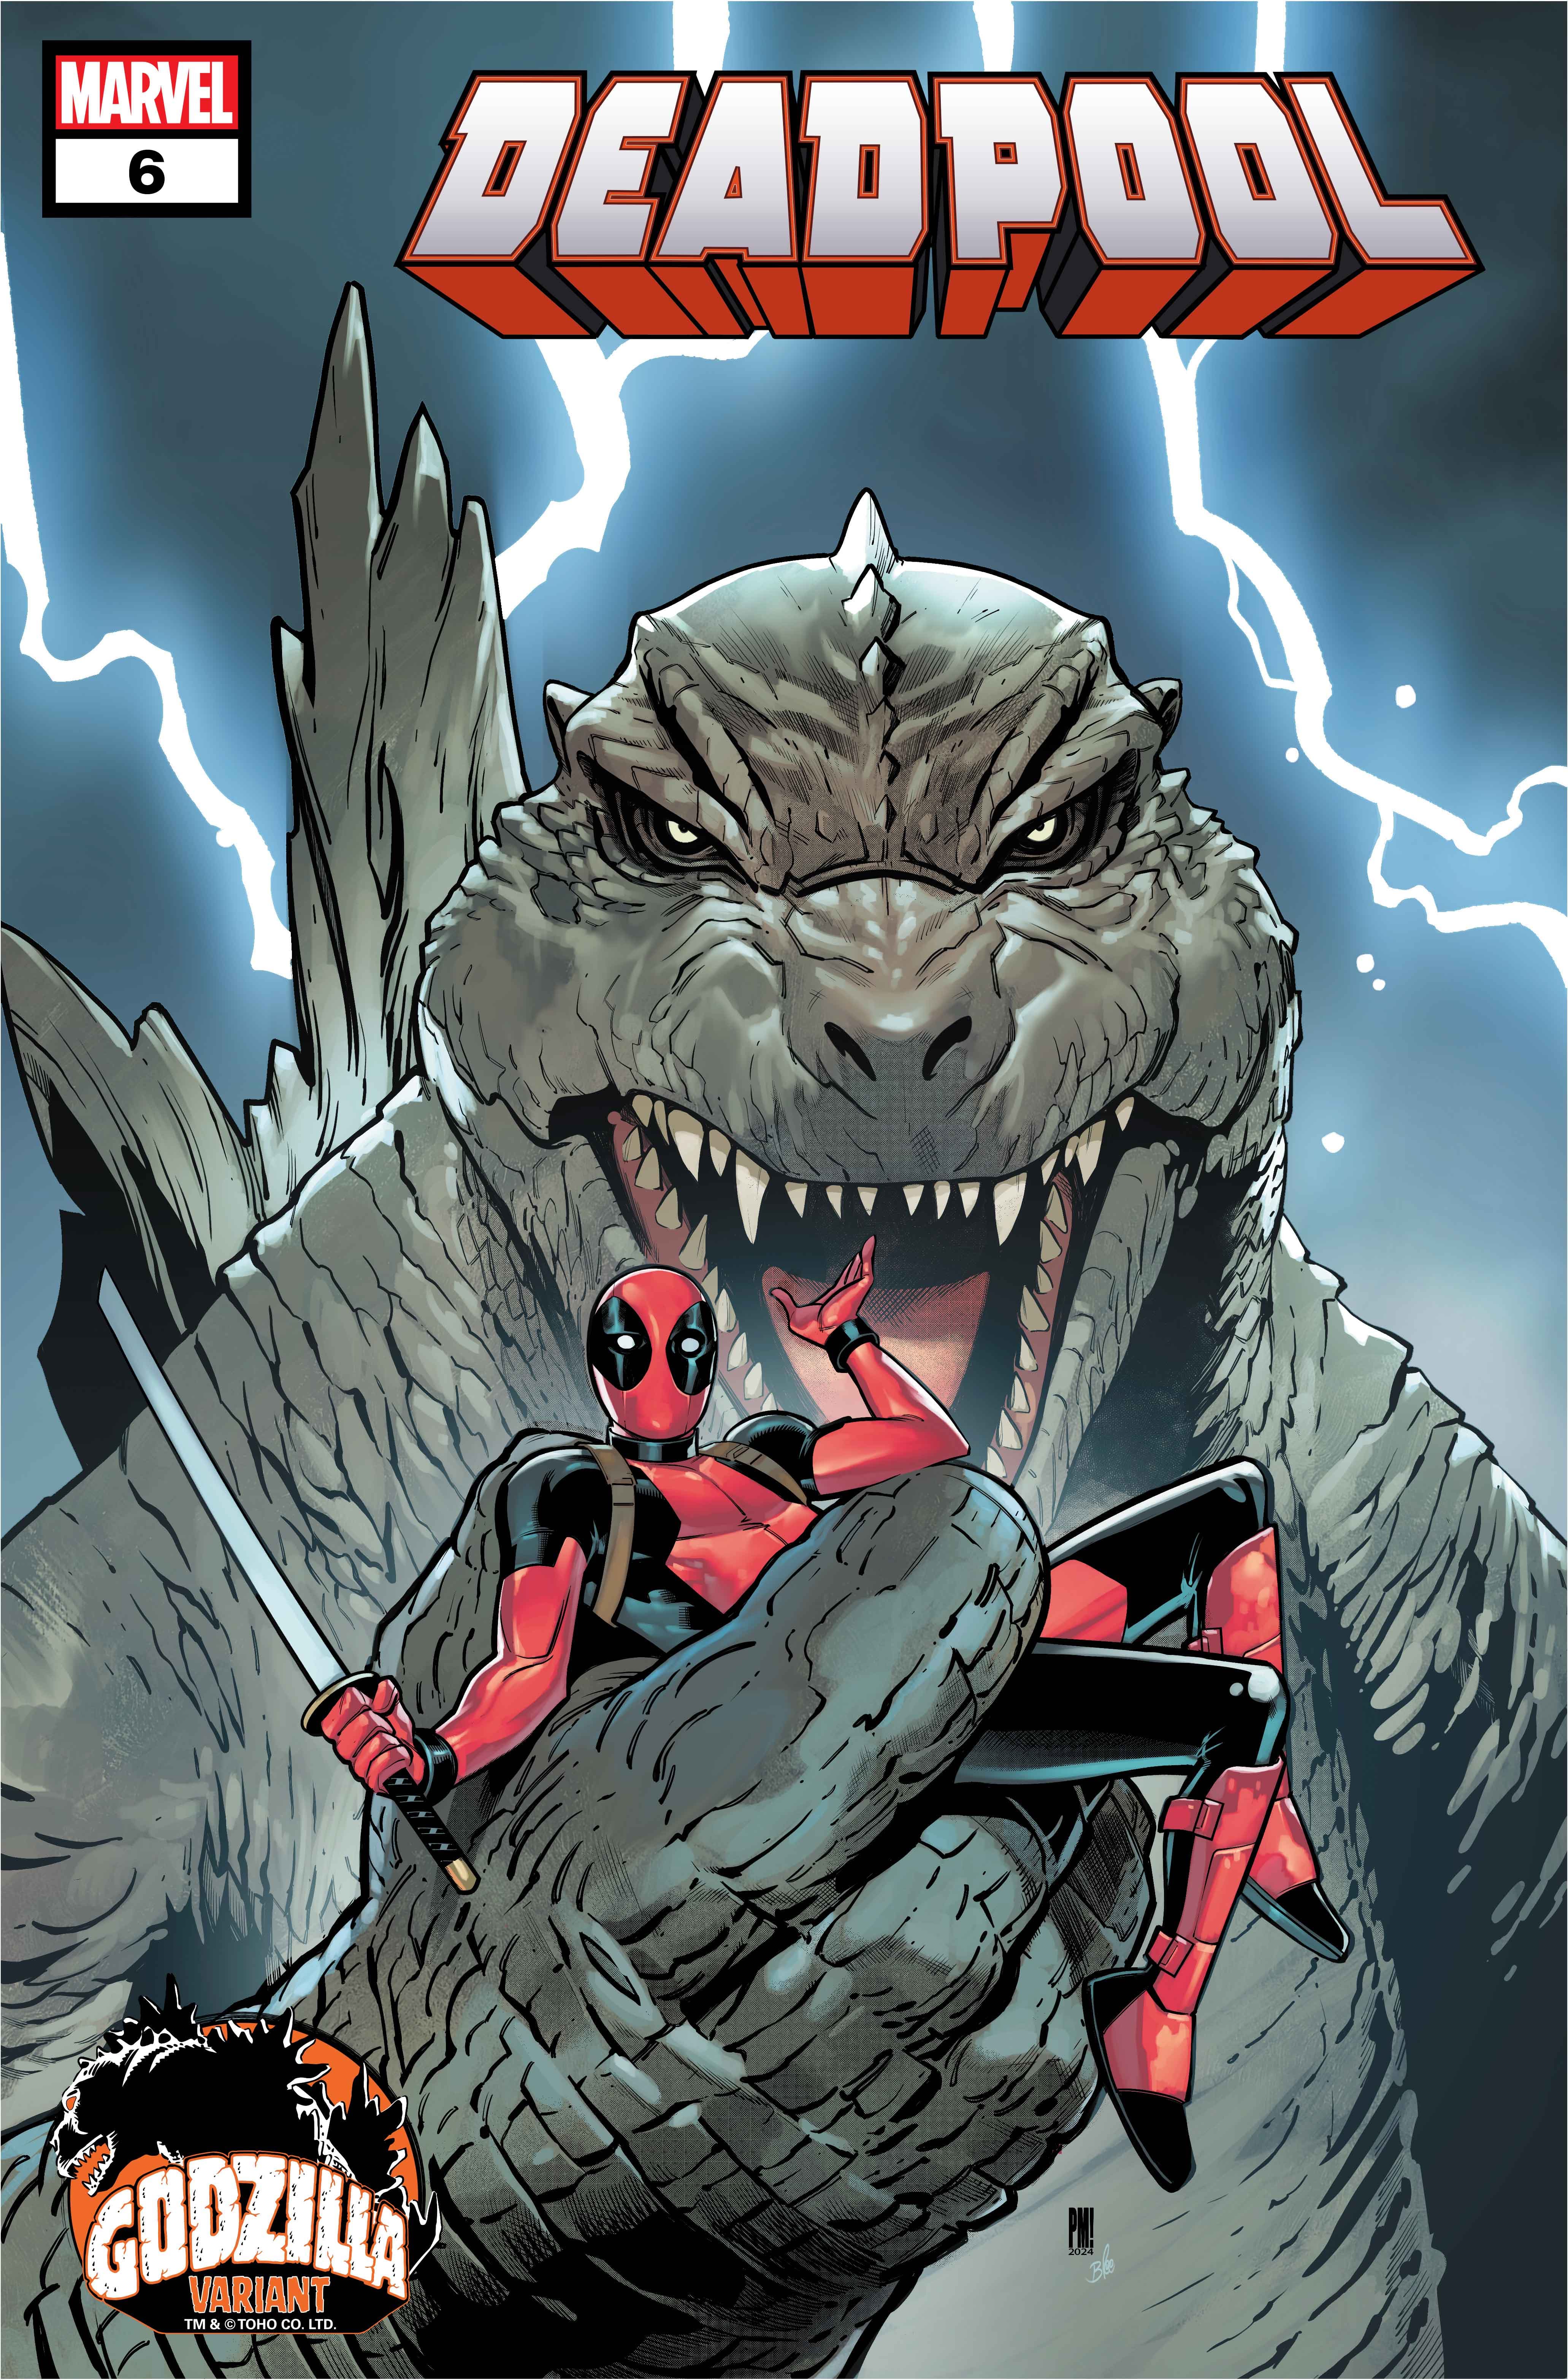 DEADPOOL #6 Godzilla Variant Cover by Paco Medina